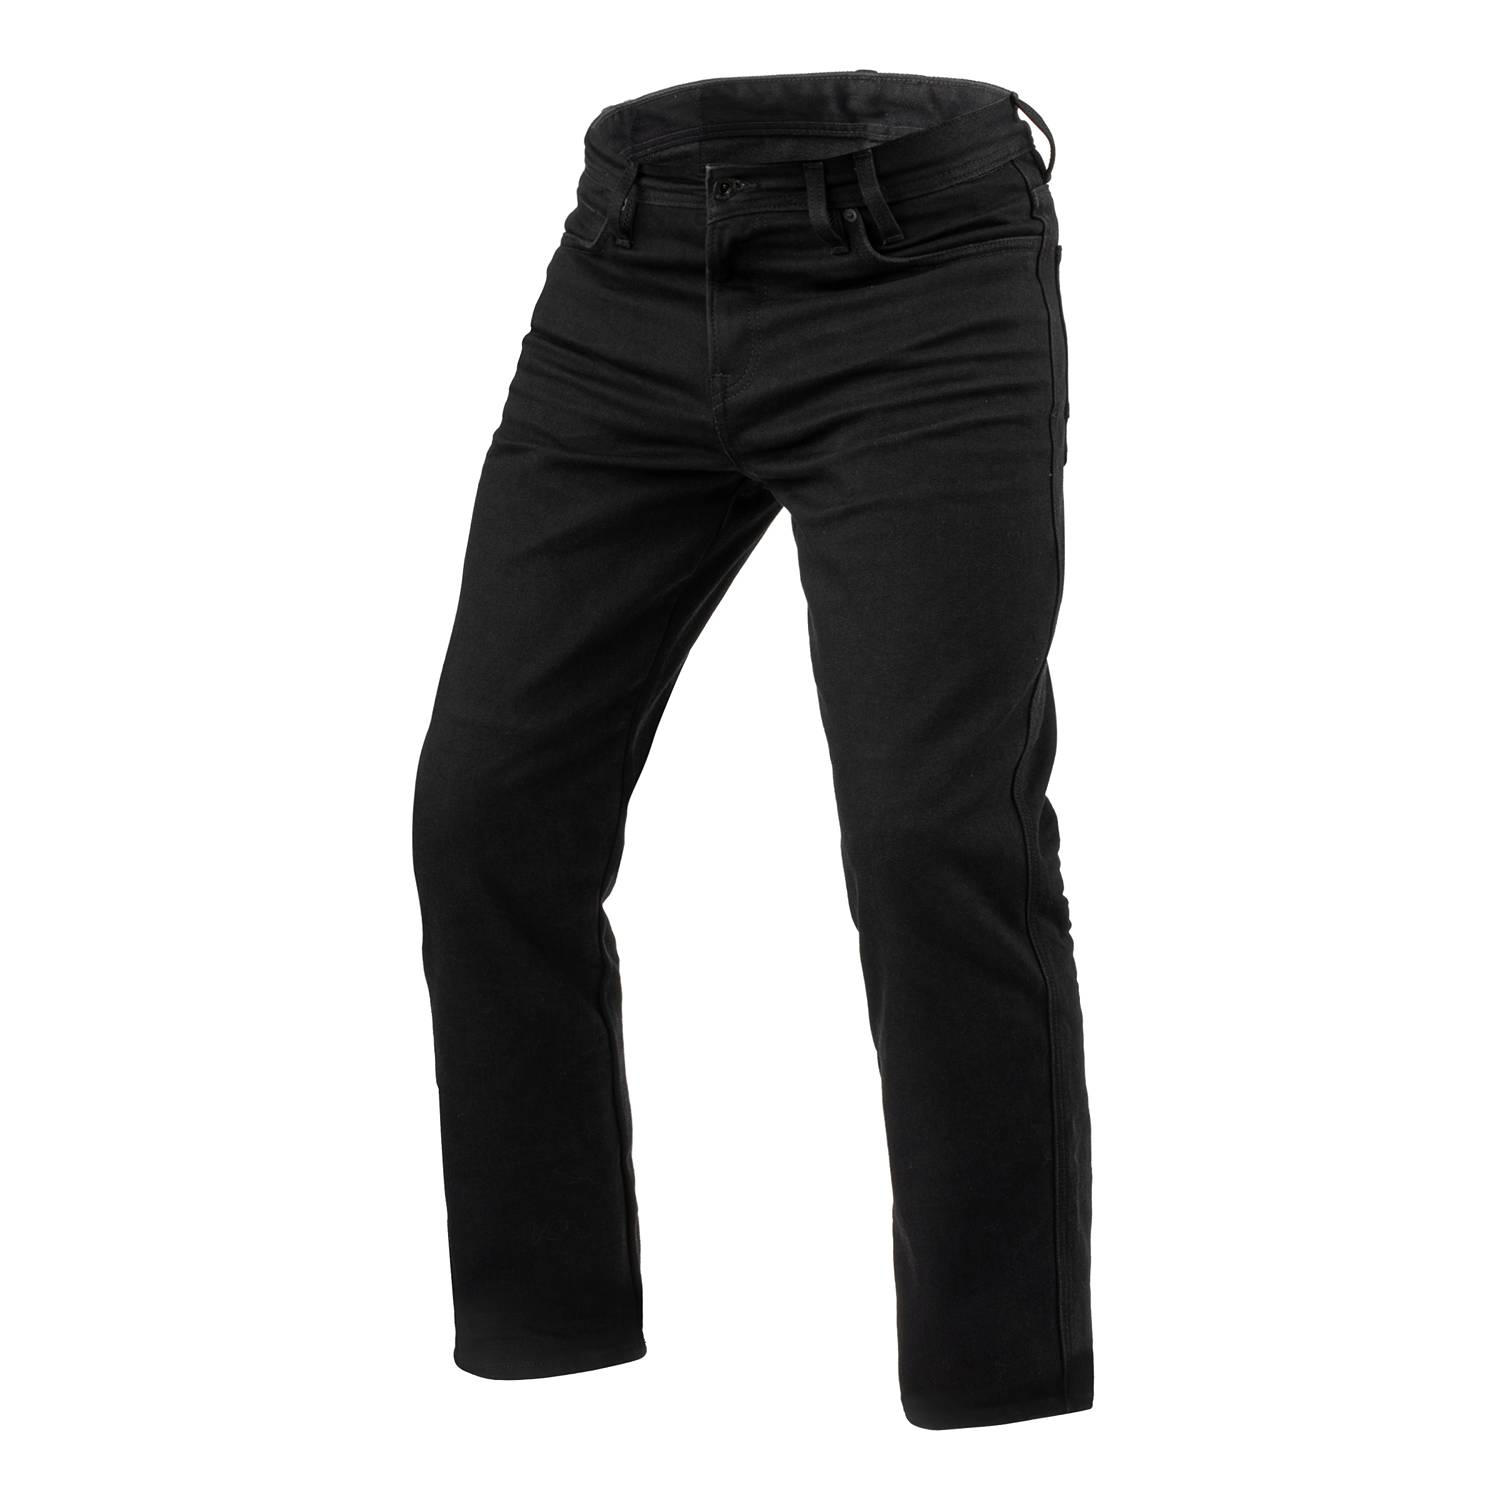 Image of REV'IT! Jeans Lombard 3 RF Black L36 Motorcycle Jeans Größe L36/W33